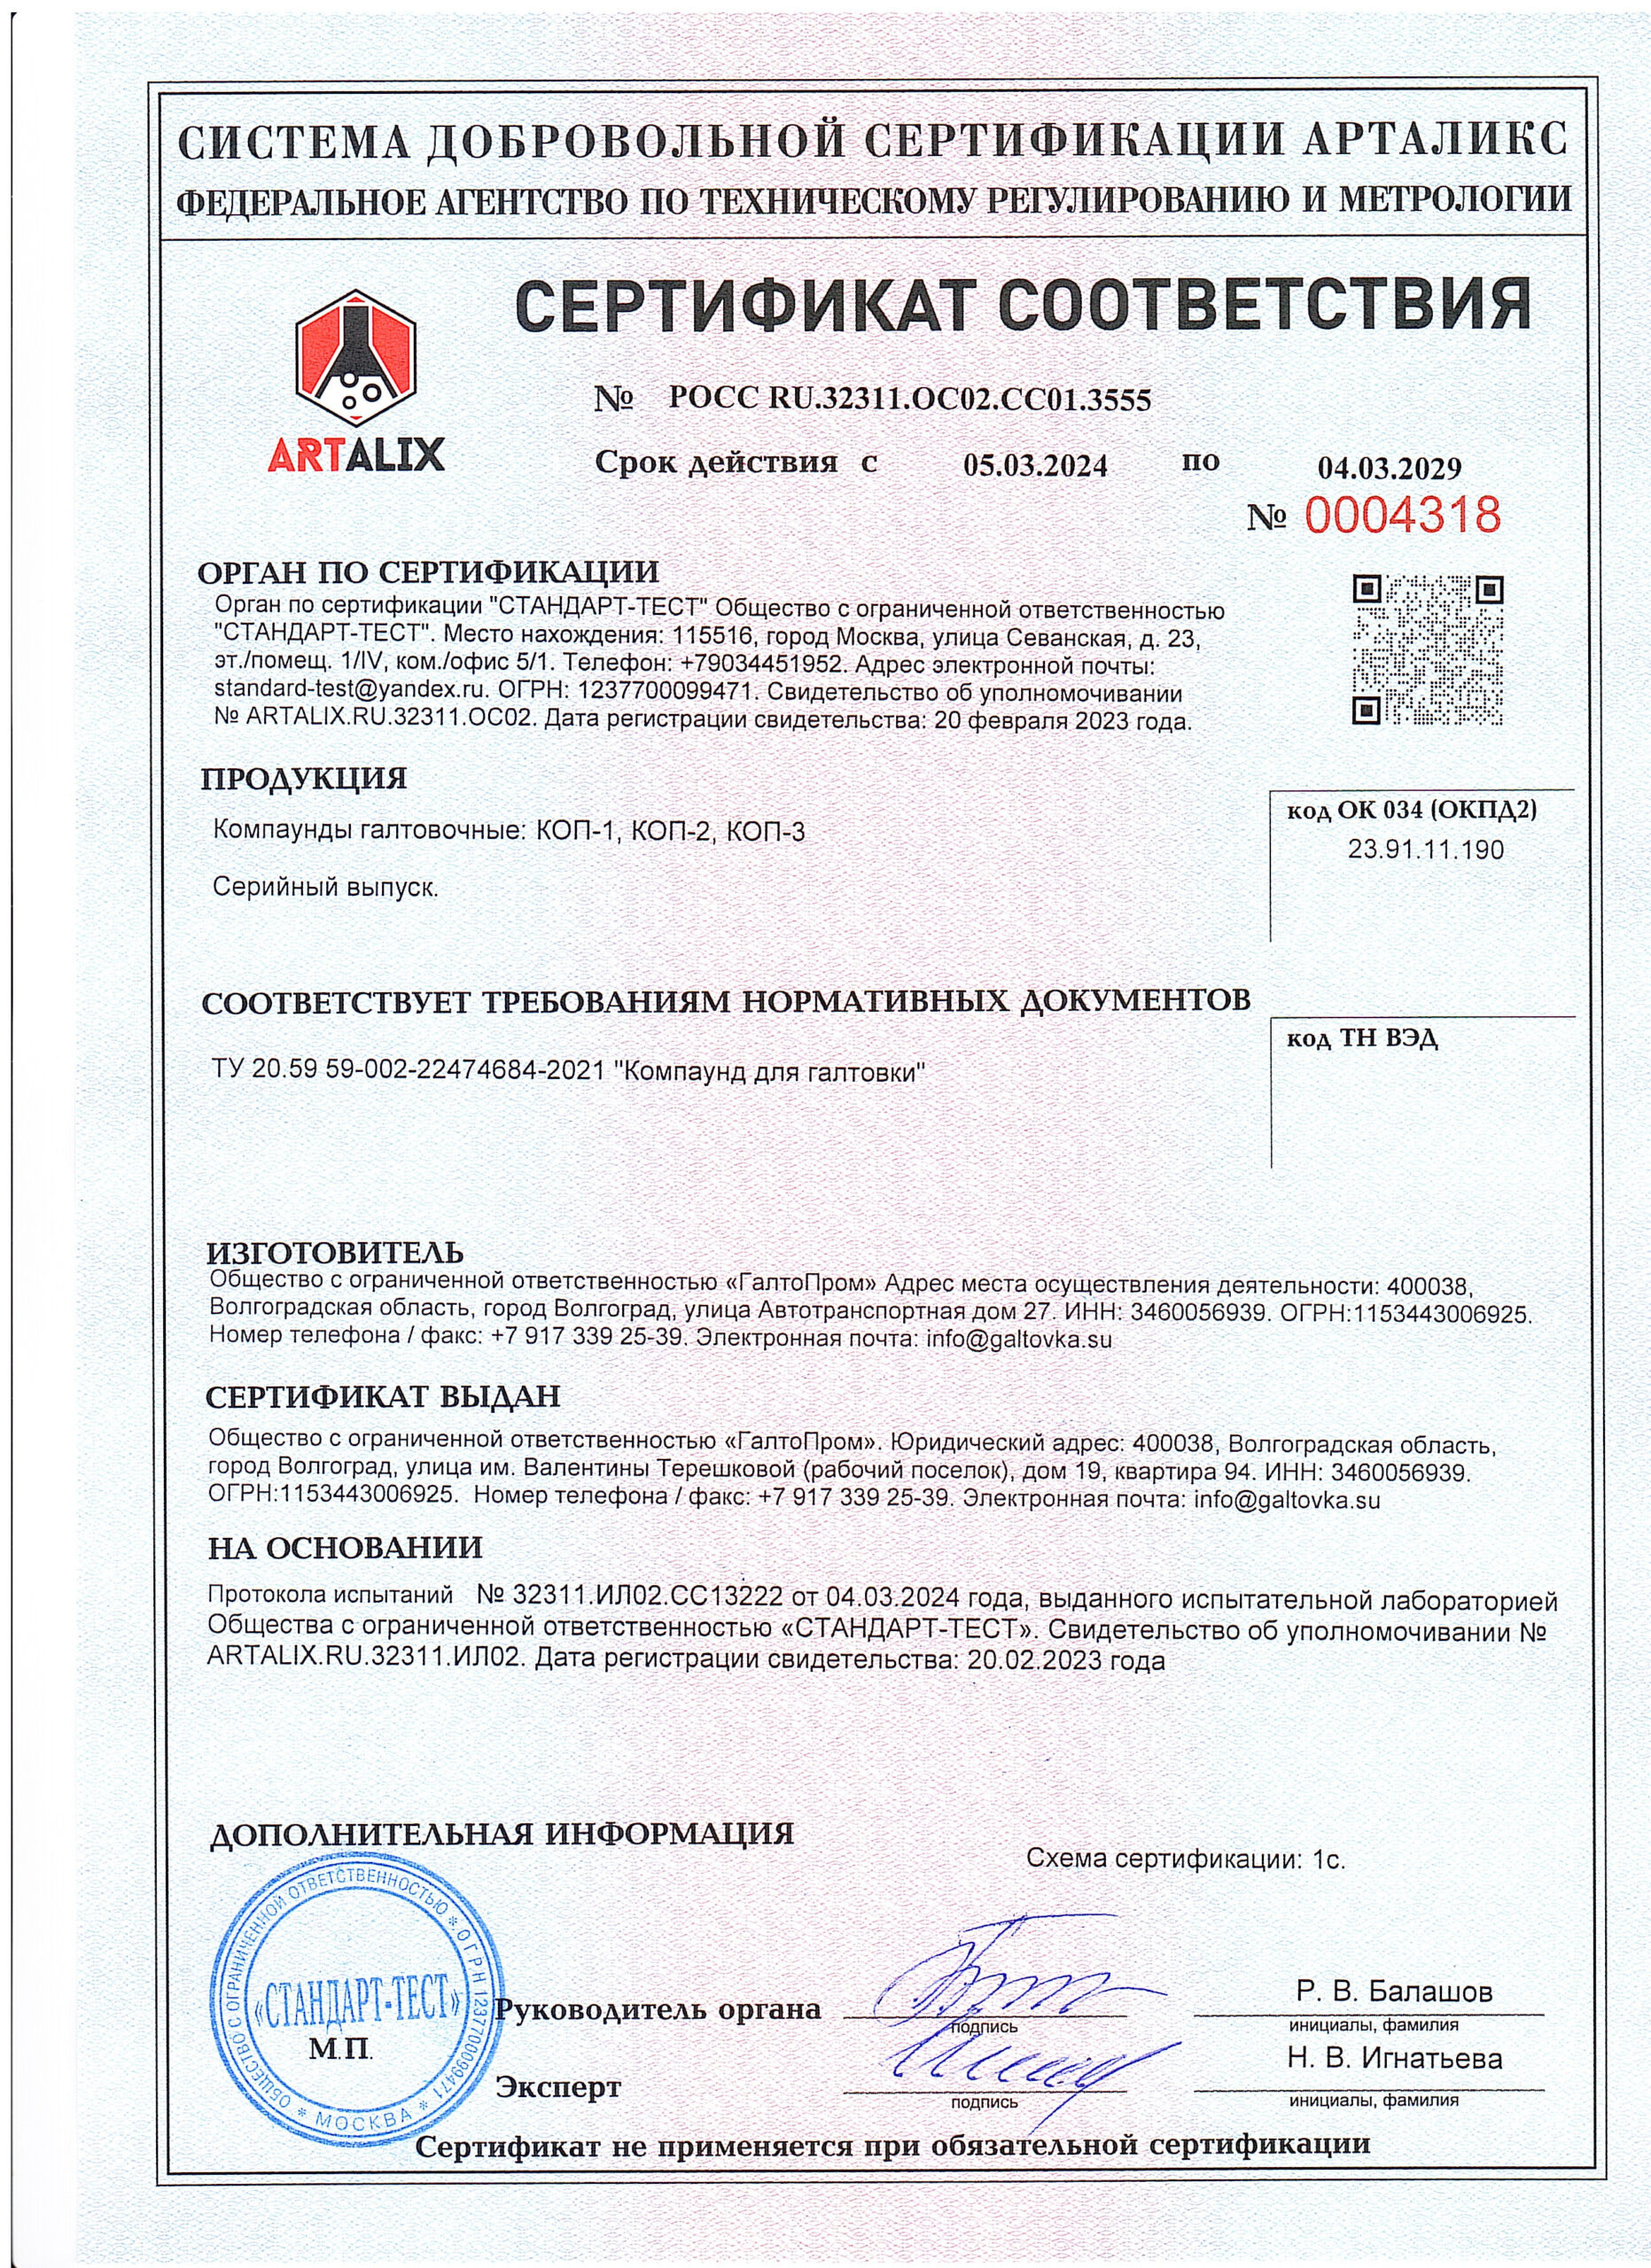 Сертификат соответствия галтовочного наполнителя, произведённого компанией ГалтоПром